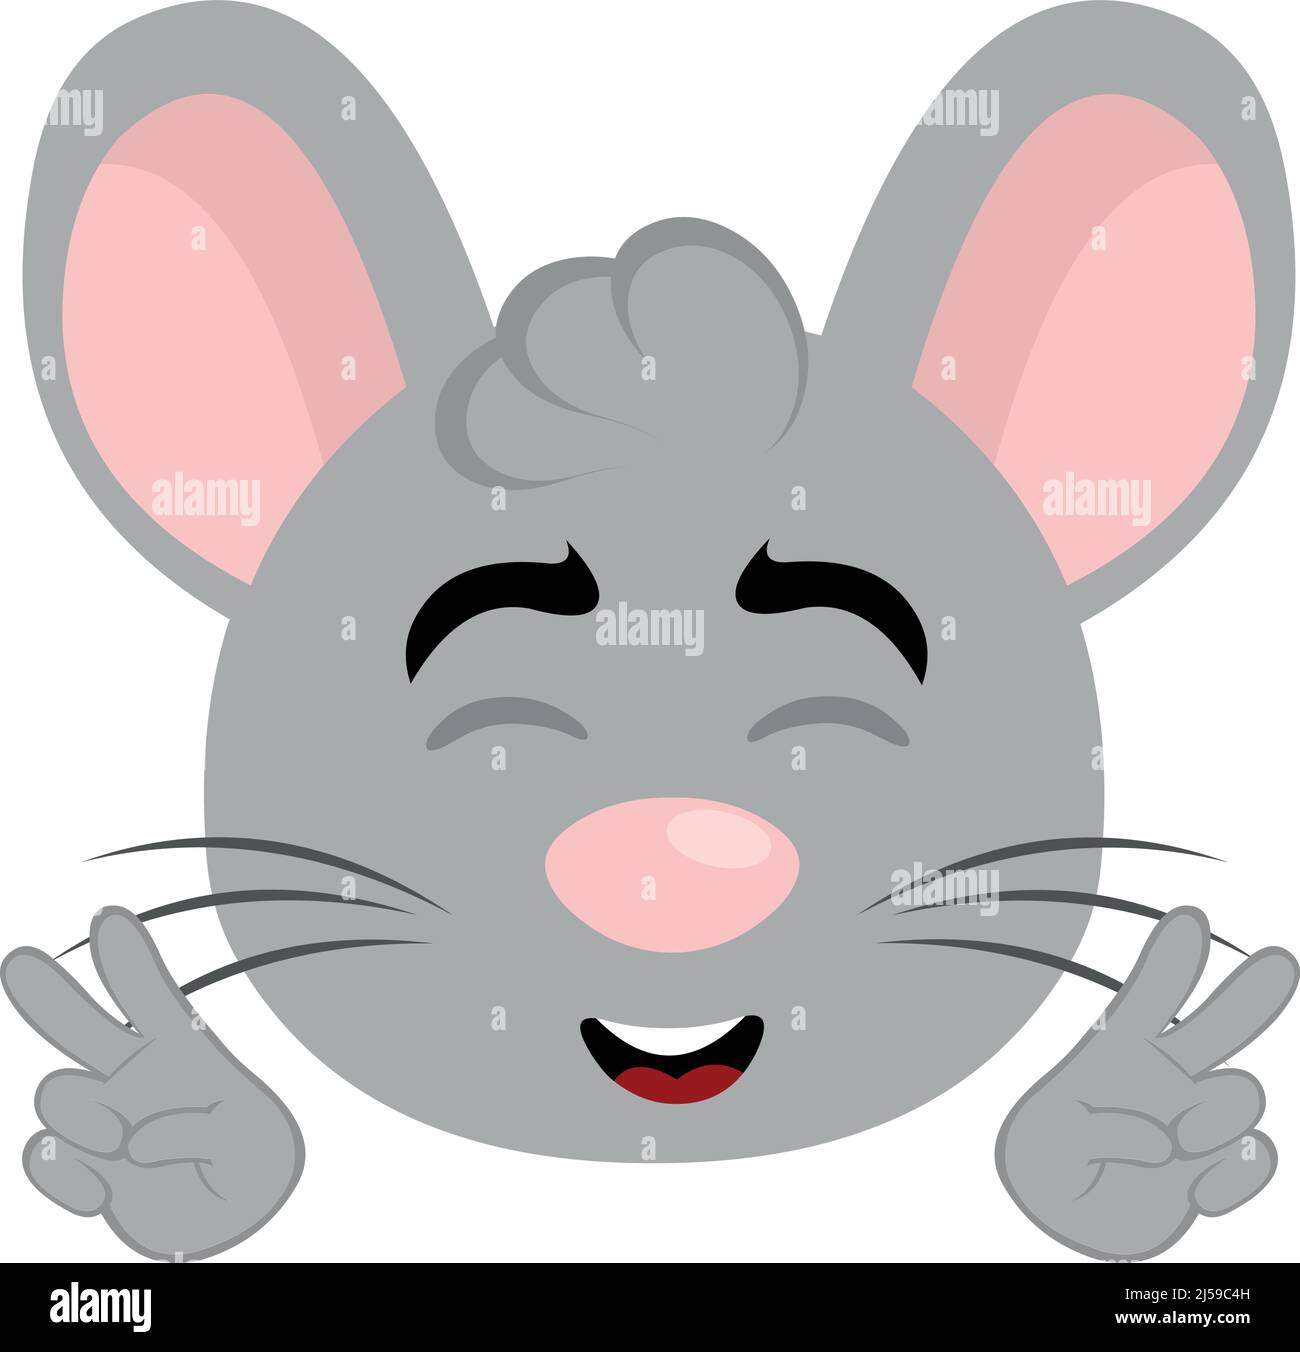 Vektor-Illustration des Gesichts einer Cartoon-Maus mit einem glücklichen Ausdruck, so dass die klassische Geste der Liebe und des Friedens oder V-Sieg mit seinen Händen Stock Vektor